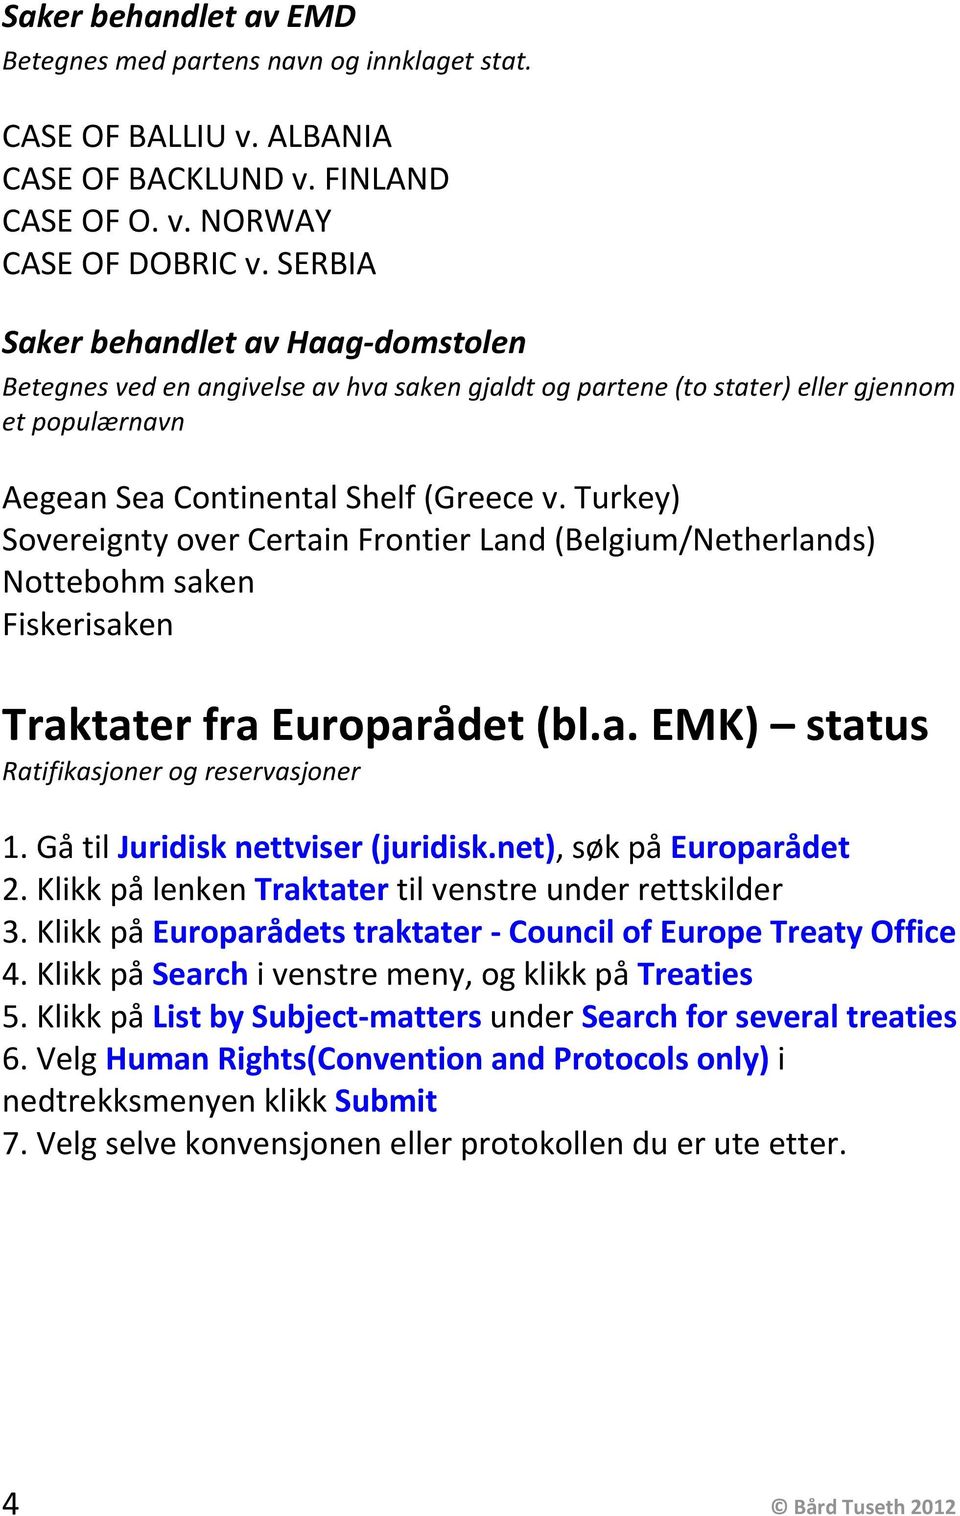 Turkey) Sovereignty over Certain Frontier Land (Belgium/Netherlands) Nottebohm saken Fiskerisaken Traktater fra Europarådet (bl.a. EMK) status Ratifikasjoner og reservasjoner 1.